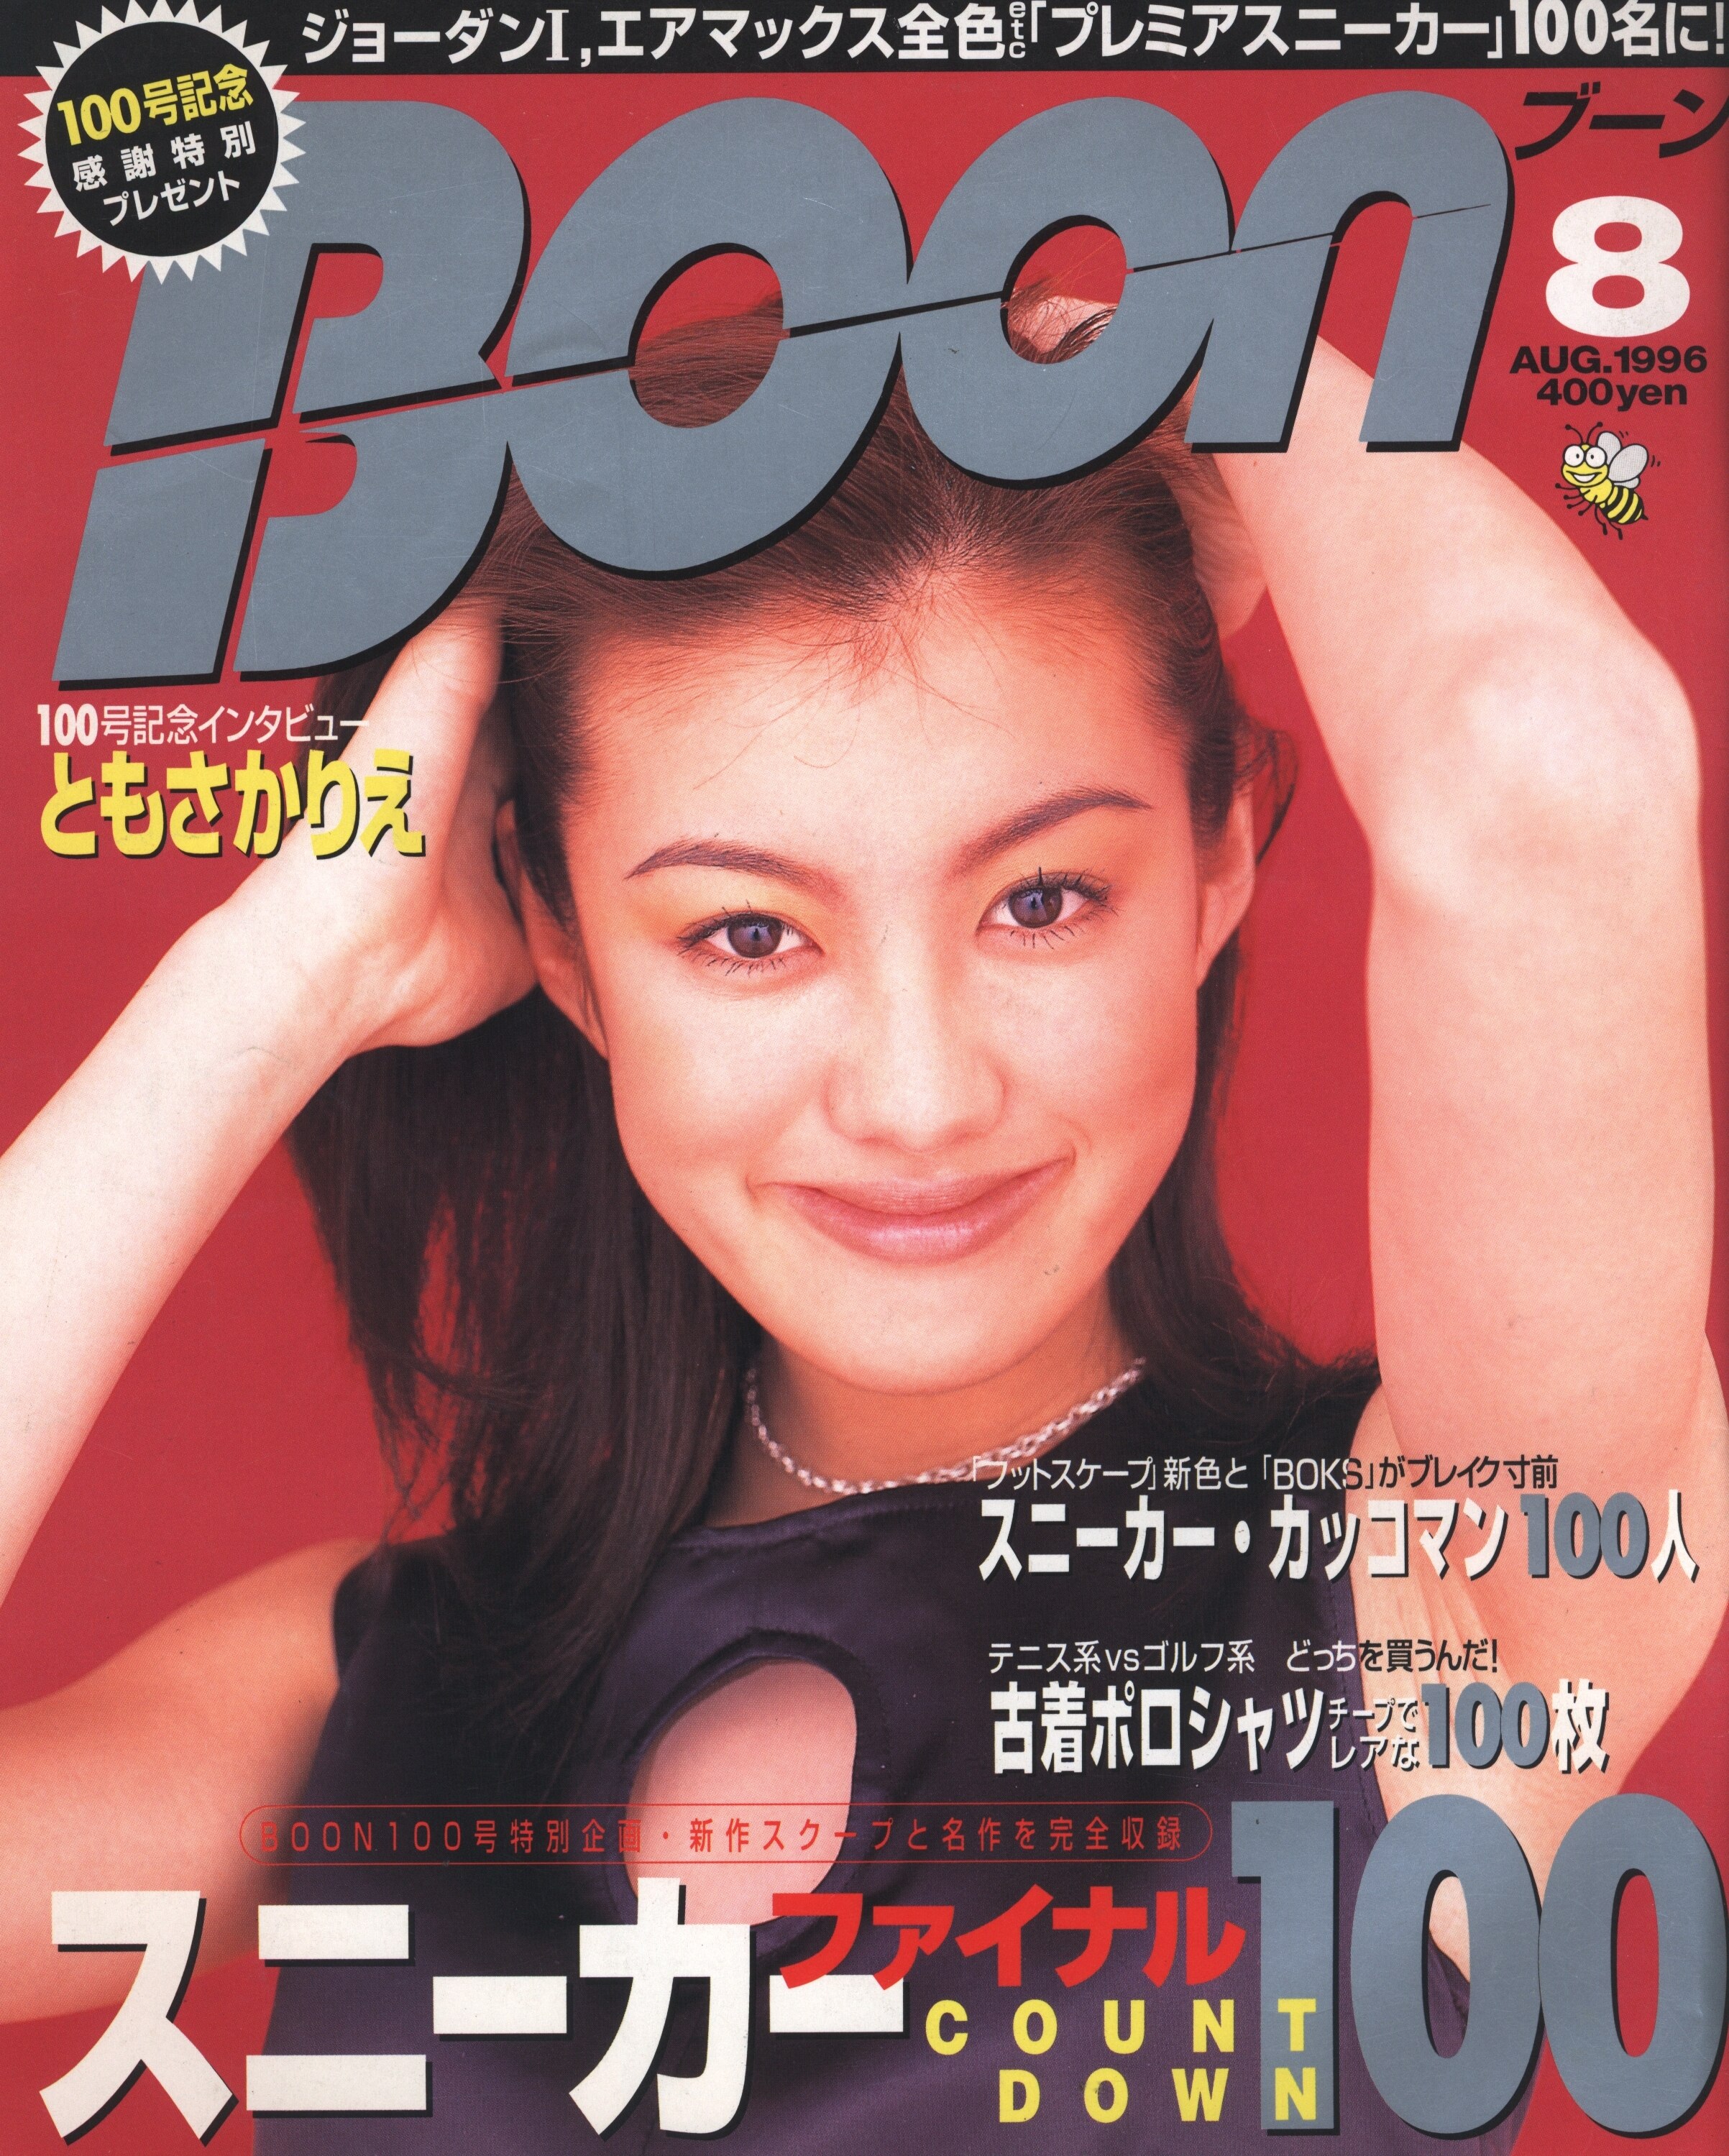 販売販売店舗 雑誌 BOON 1997年 1月号〜12月号 12冊セット - 雑誌